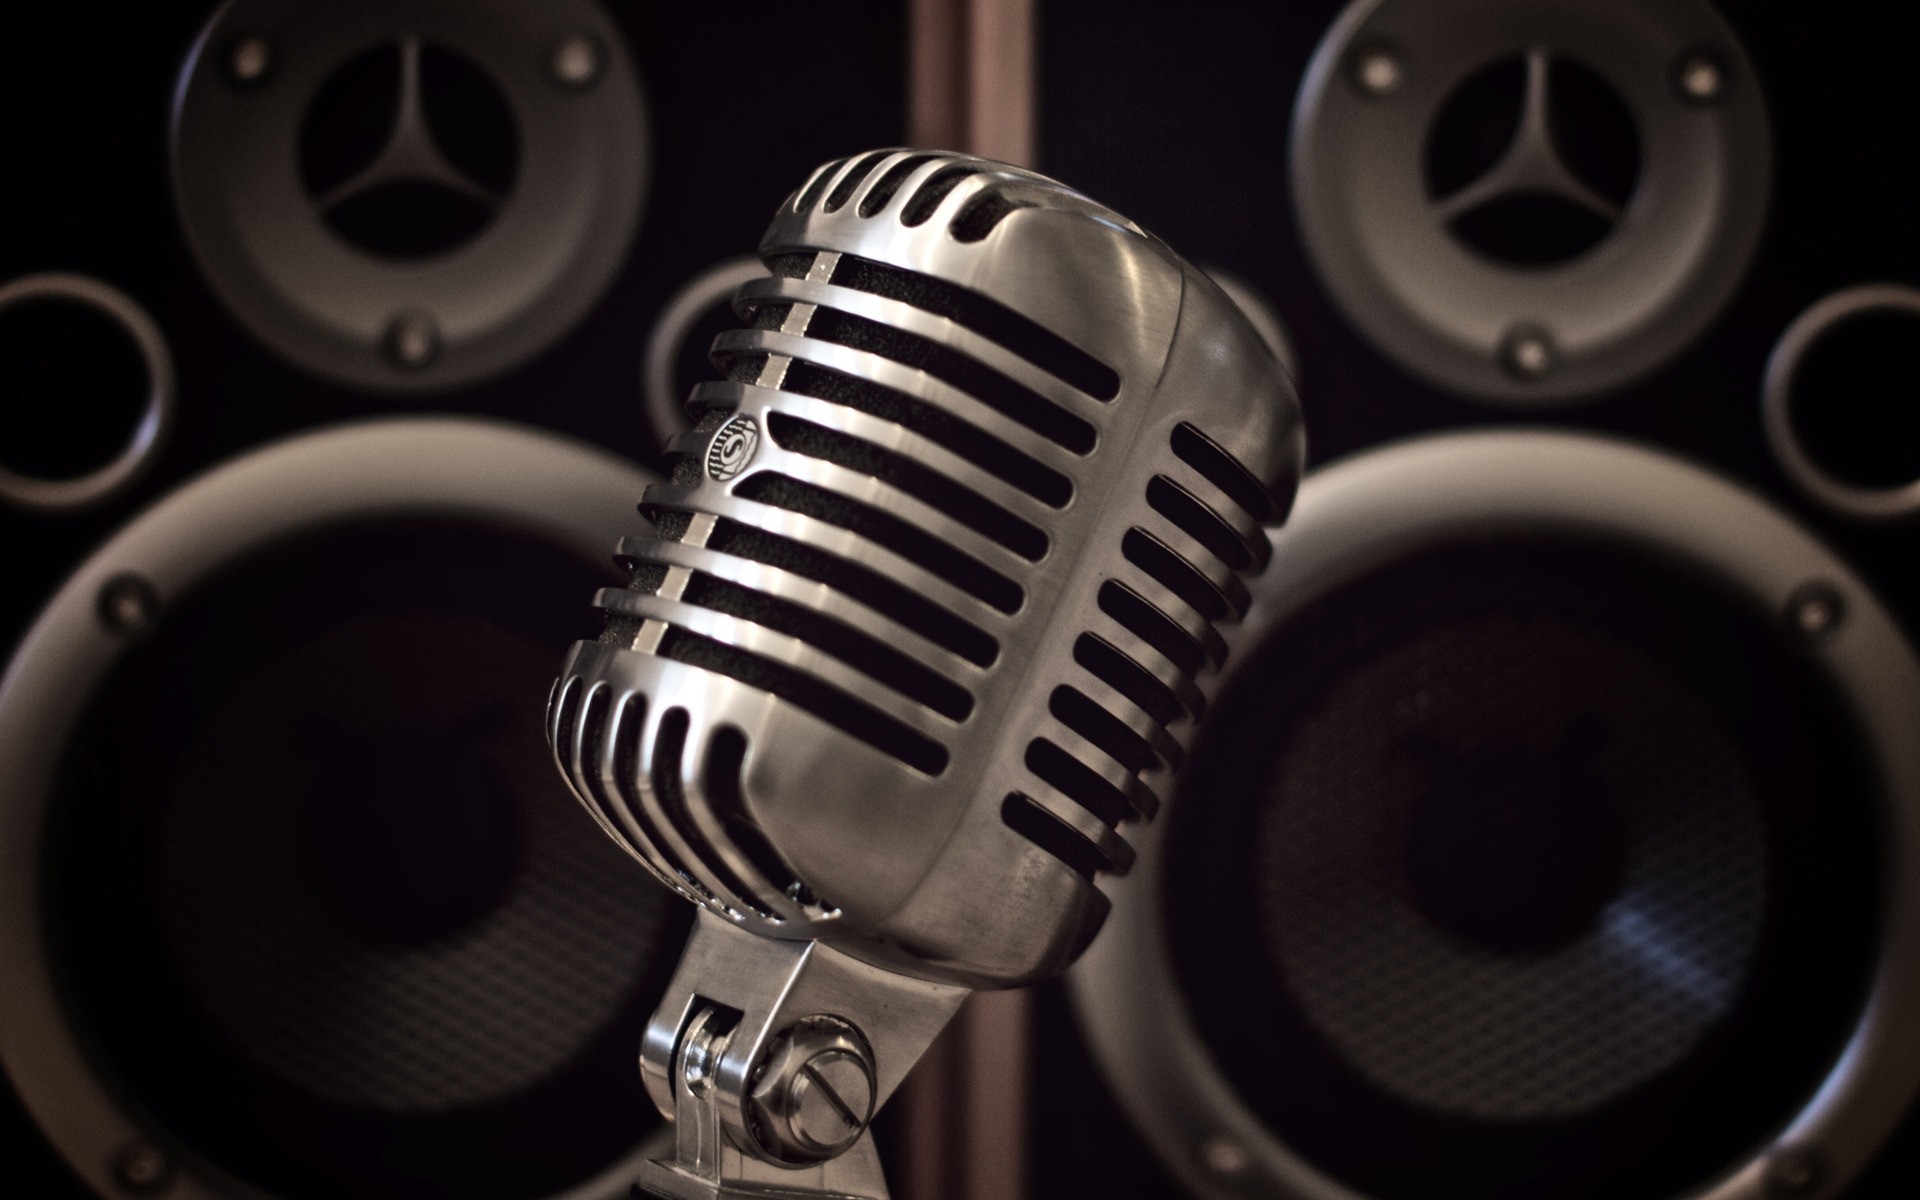 абстракция звук оборудование голос технология хром спикер сталь музыка классический электроника изолированные микрофон современные металлические петь микрофон старый